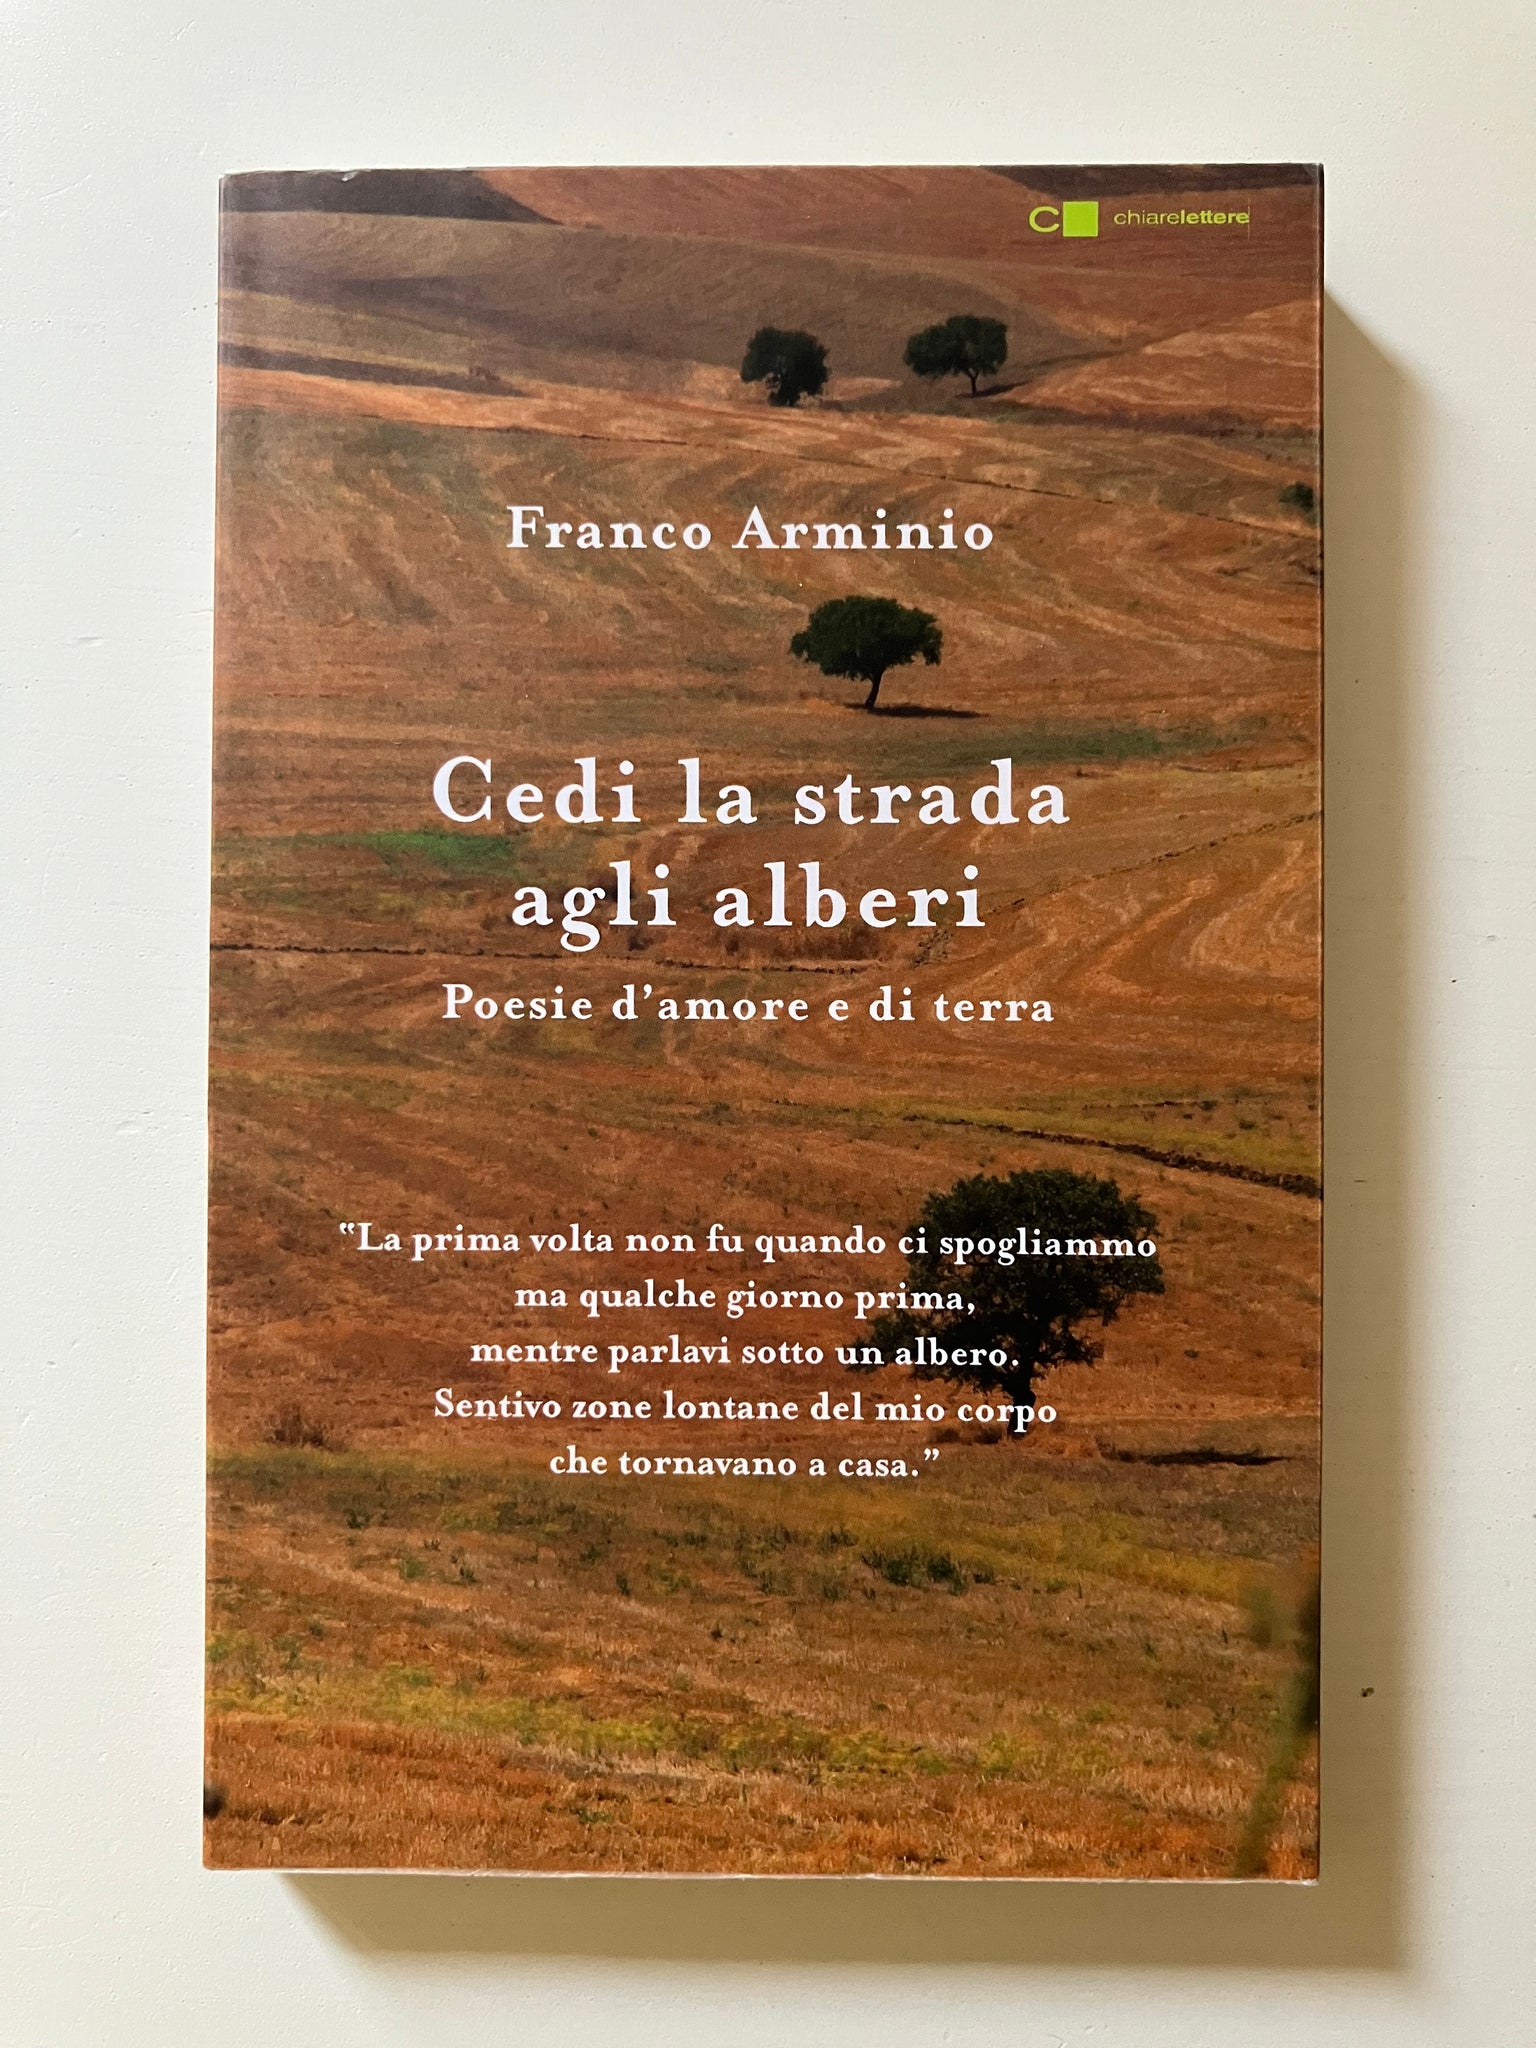 Franco Arminio - Cedi la strada agli alberi Poesie d'amore e di terra